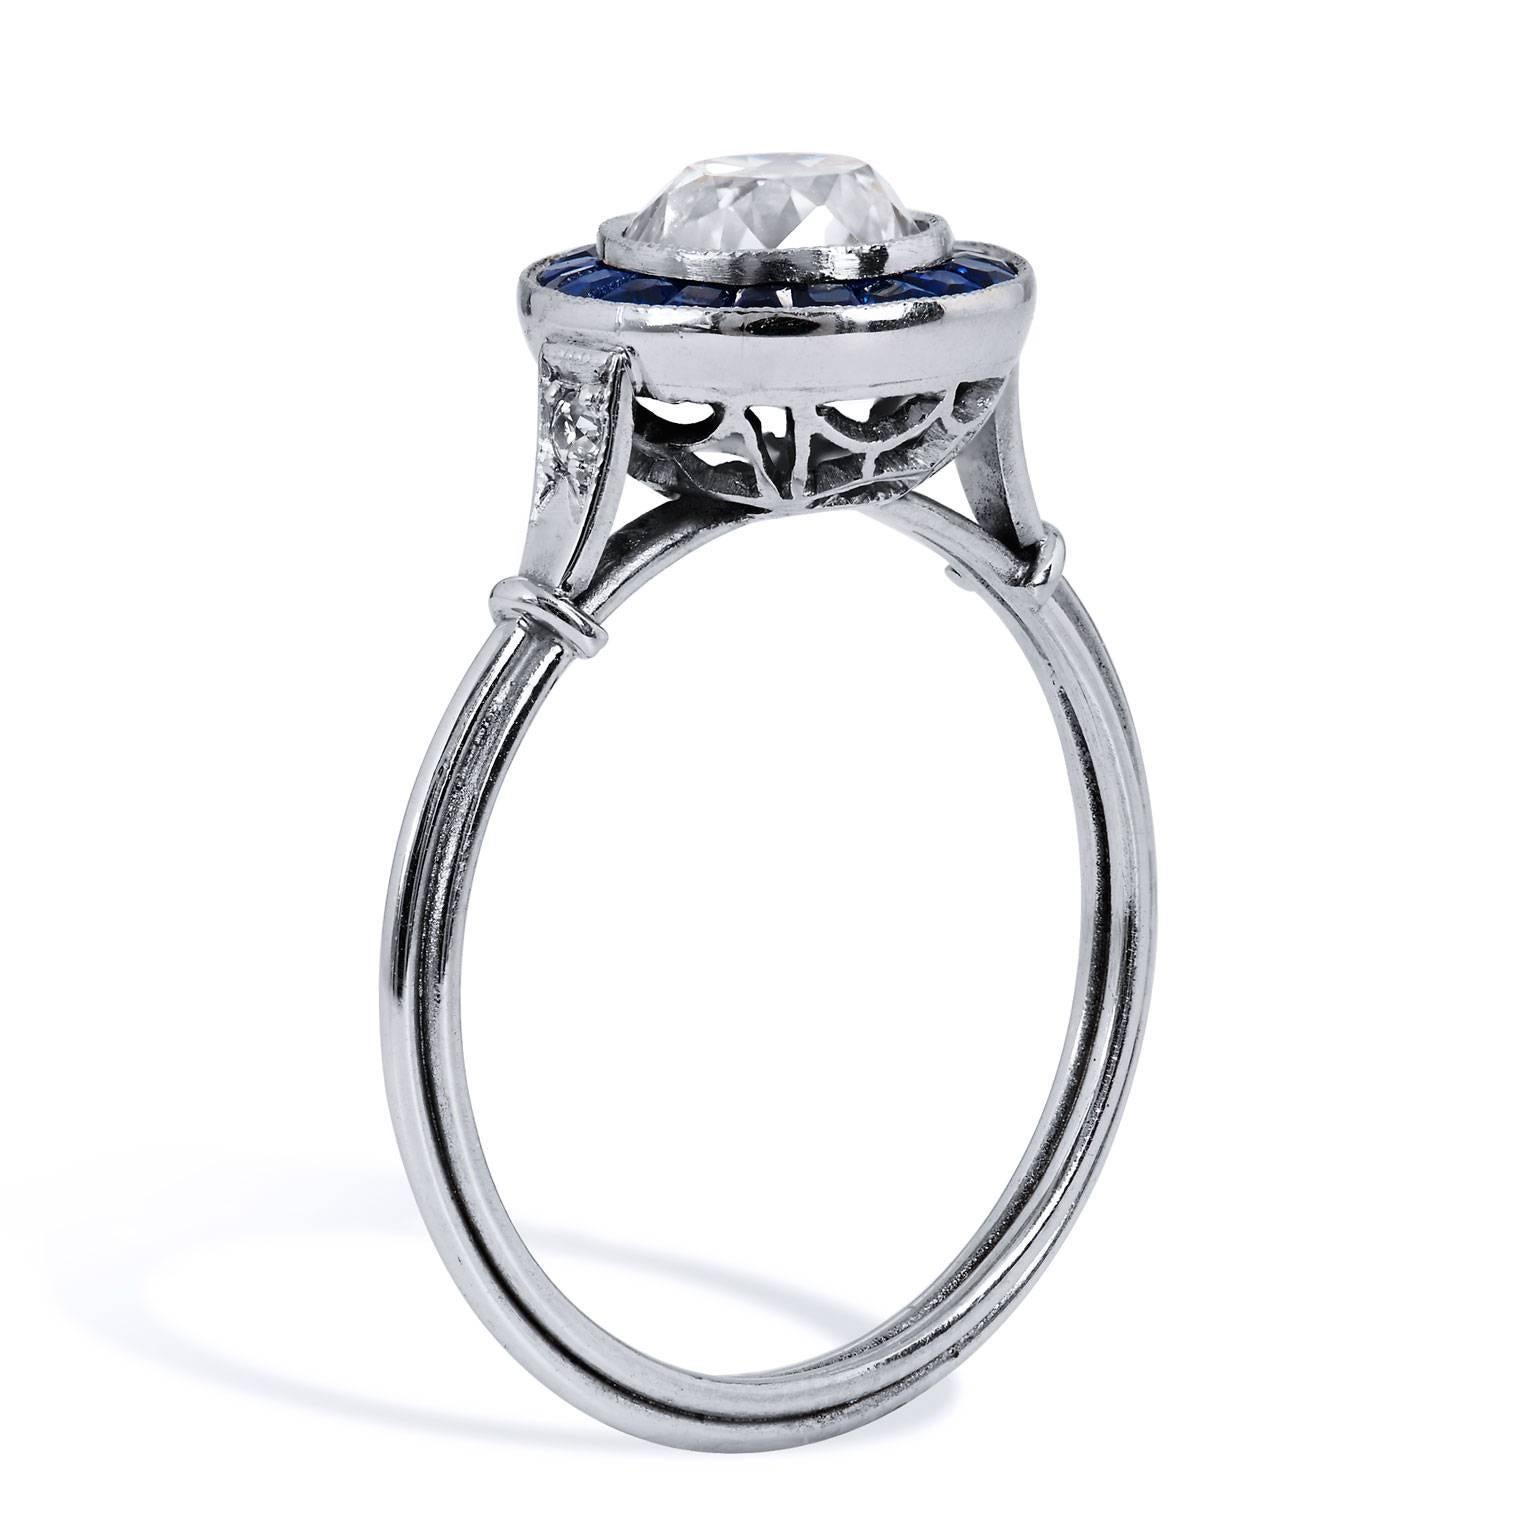 Art Deco Stil Neue 1,16 Karat Alte Europäische Schliff Diamant Saphir Platin Ring

Dieser Ring ist brandneu.  Er wurde so gestaltet, dass er wie ein eleganter Ring aus der Art-Déco-Ära aussieht. 
Der Diamant ist Vintage.  Es ist ein alteuropäischer